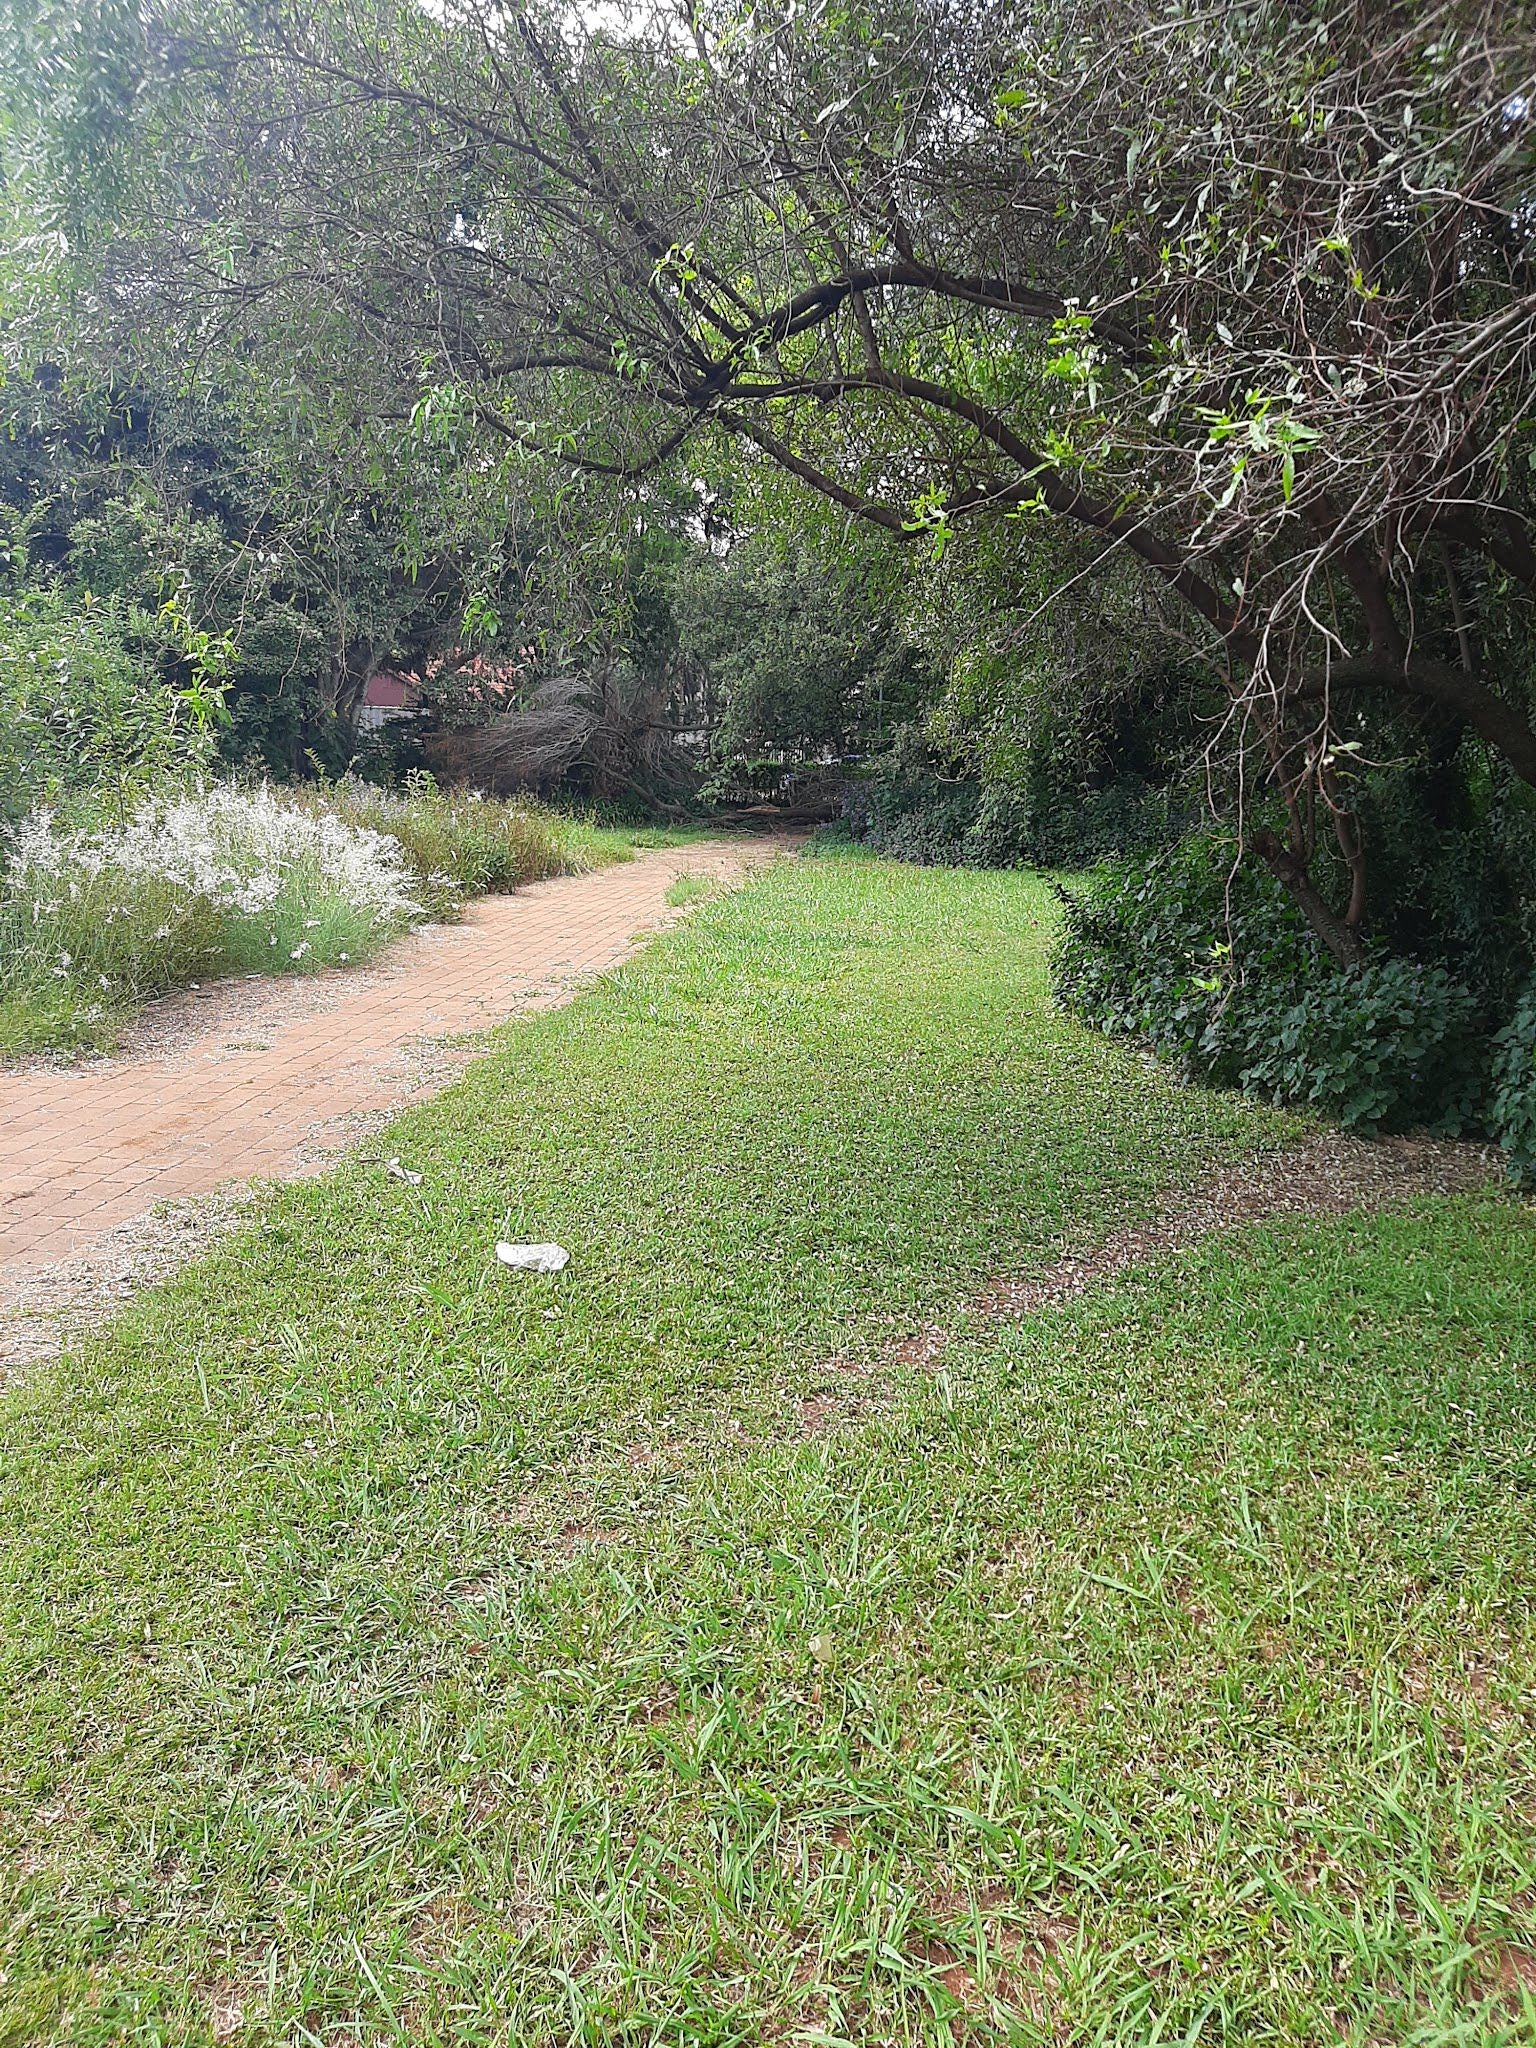  Springbok Park